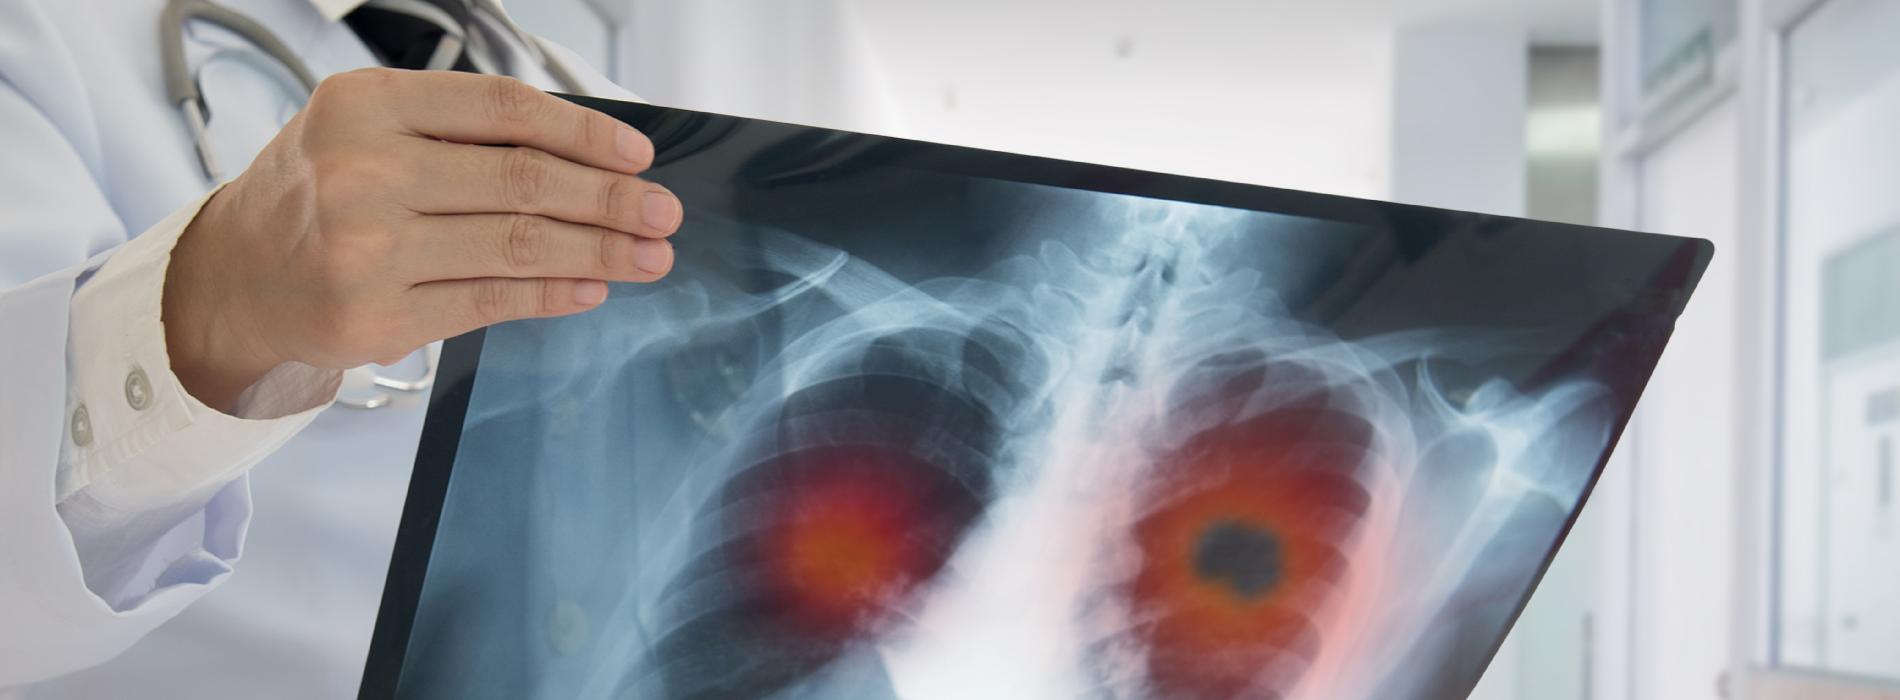 Rak płuca - badania, które umożliwią jego wczesne wykrycie